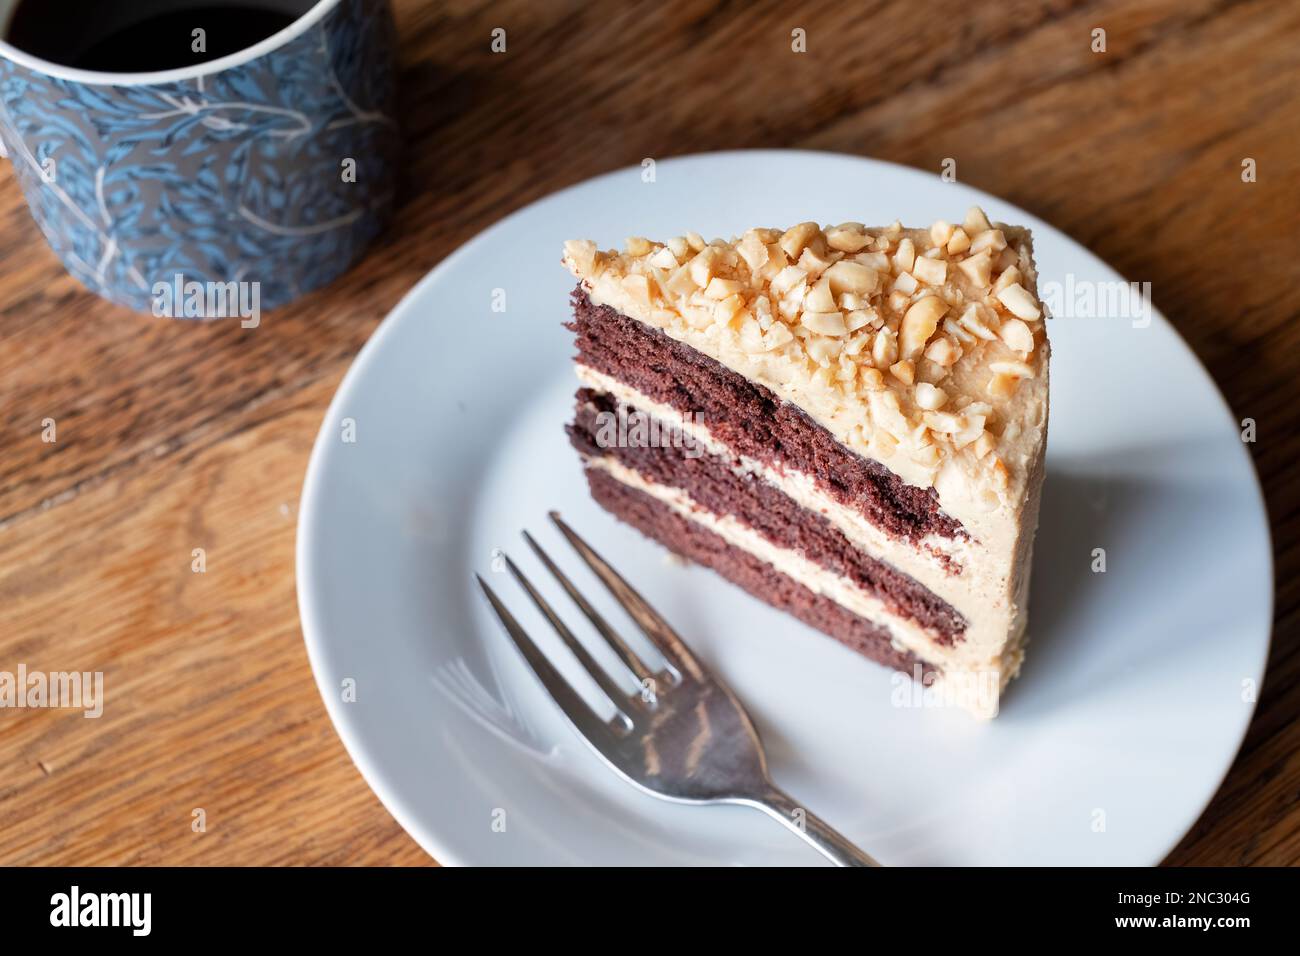 Ein Stück frisch gebackene Erdnussbutter und Schokoladenkuchen. Der Kuchen ist mit einer dicken Buttercreme gefüllt und wird zusammen mit einer Tasse Tee auf einem Beilagenteller serviert Stockfoto